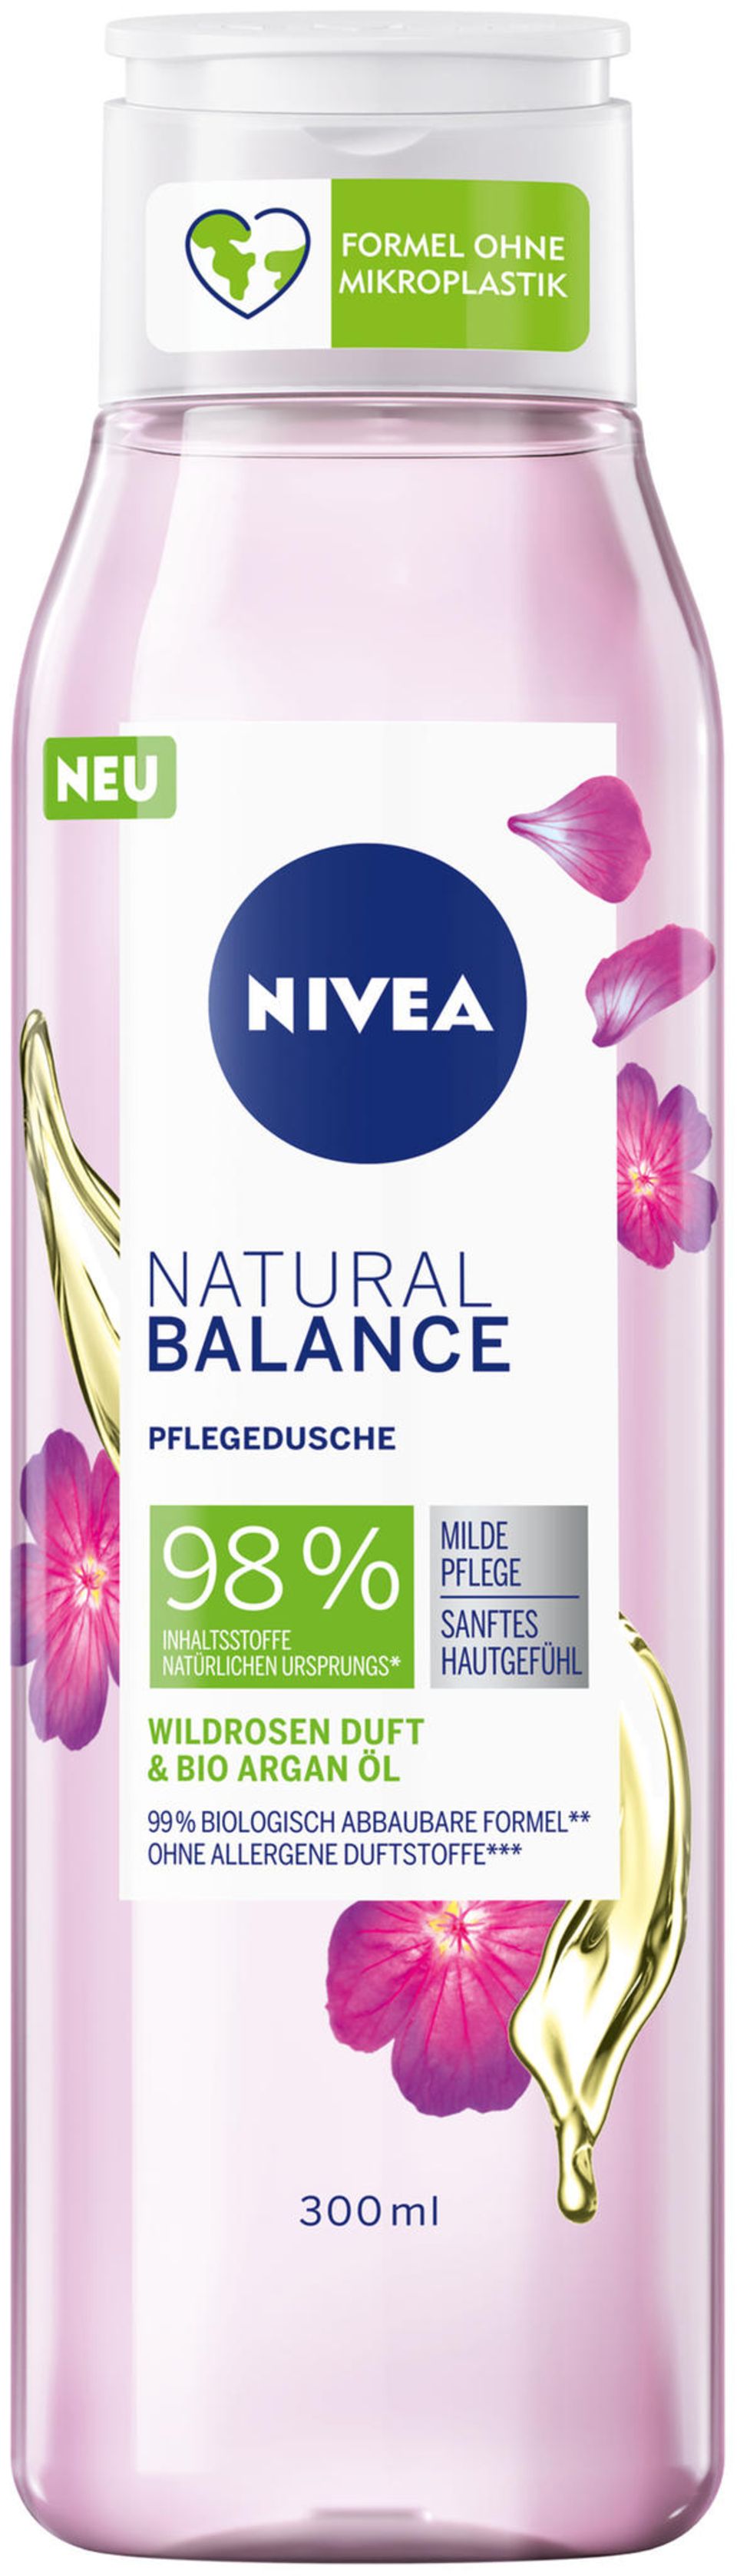 NIVEA erweitert die NIVEA Natural Balance Pflegeserie nun um drei Pflegeduschen mit 98% Inhaltsstoffen natürlichen Ursprungs und Bio-Arganöl. Unser Favorit: Wildrosen-Duft. Die rein vegane Pflegeformel ist frei von Mikroplastik, Sulfat SLES und Parabenen. Von NIVEA, etwa 4 Euro.